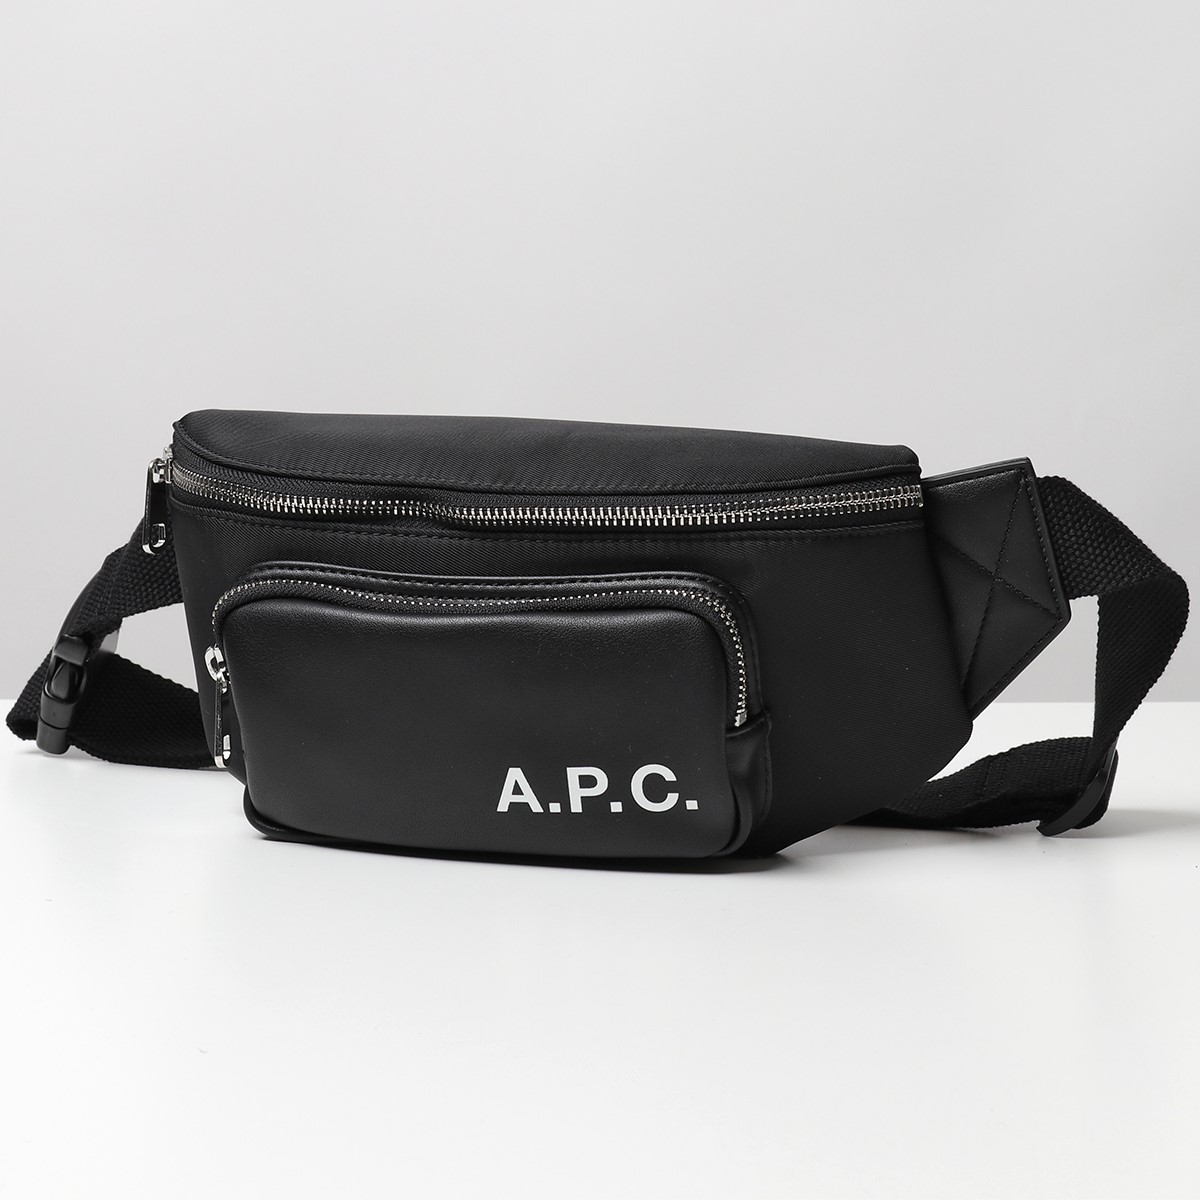 APC A.P.C. アーペーセー PAADY H62167 Camden ヒップバッグ ナイロン×エコレザー ボディバッグ ウエストポーチ  LZZ/NOIR 鞄 メンズ レディース | インポートセレクト musee